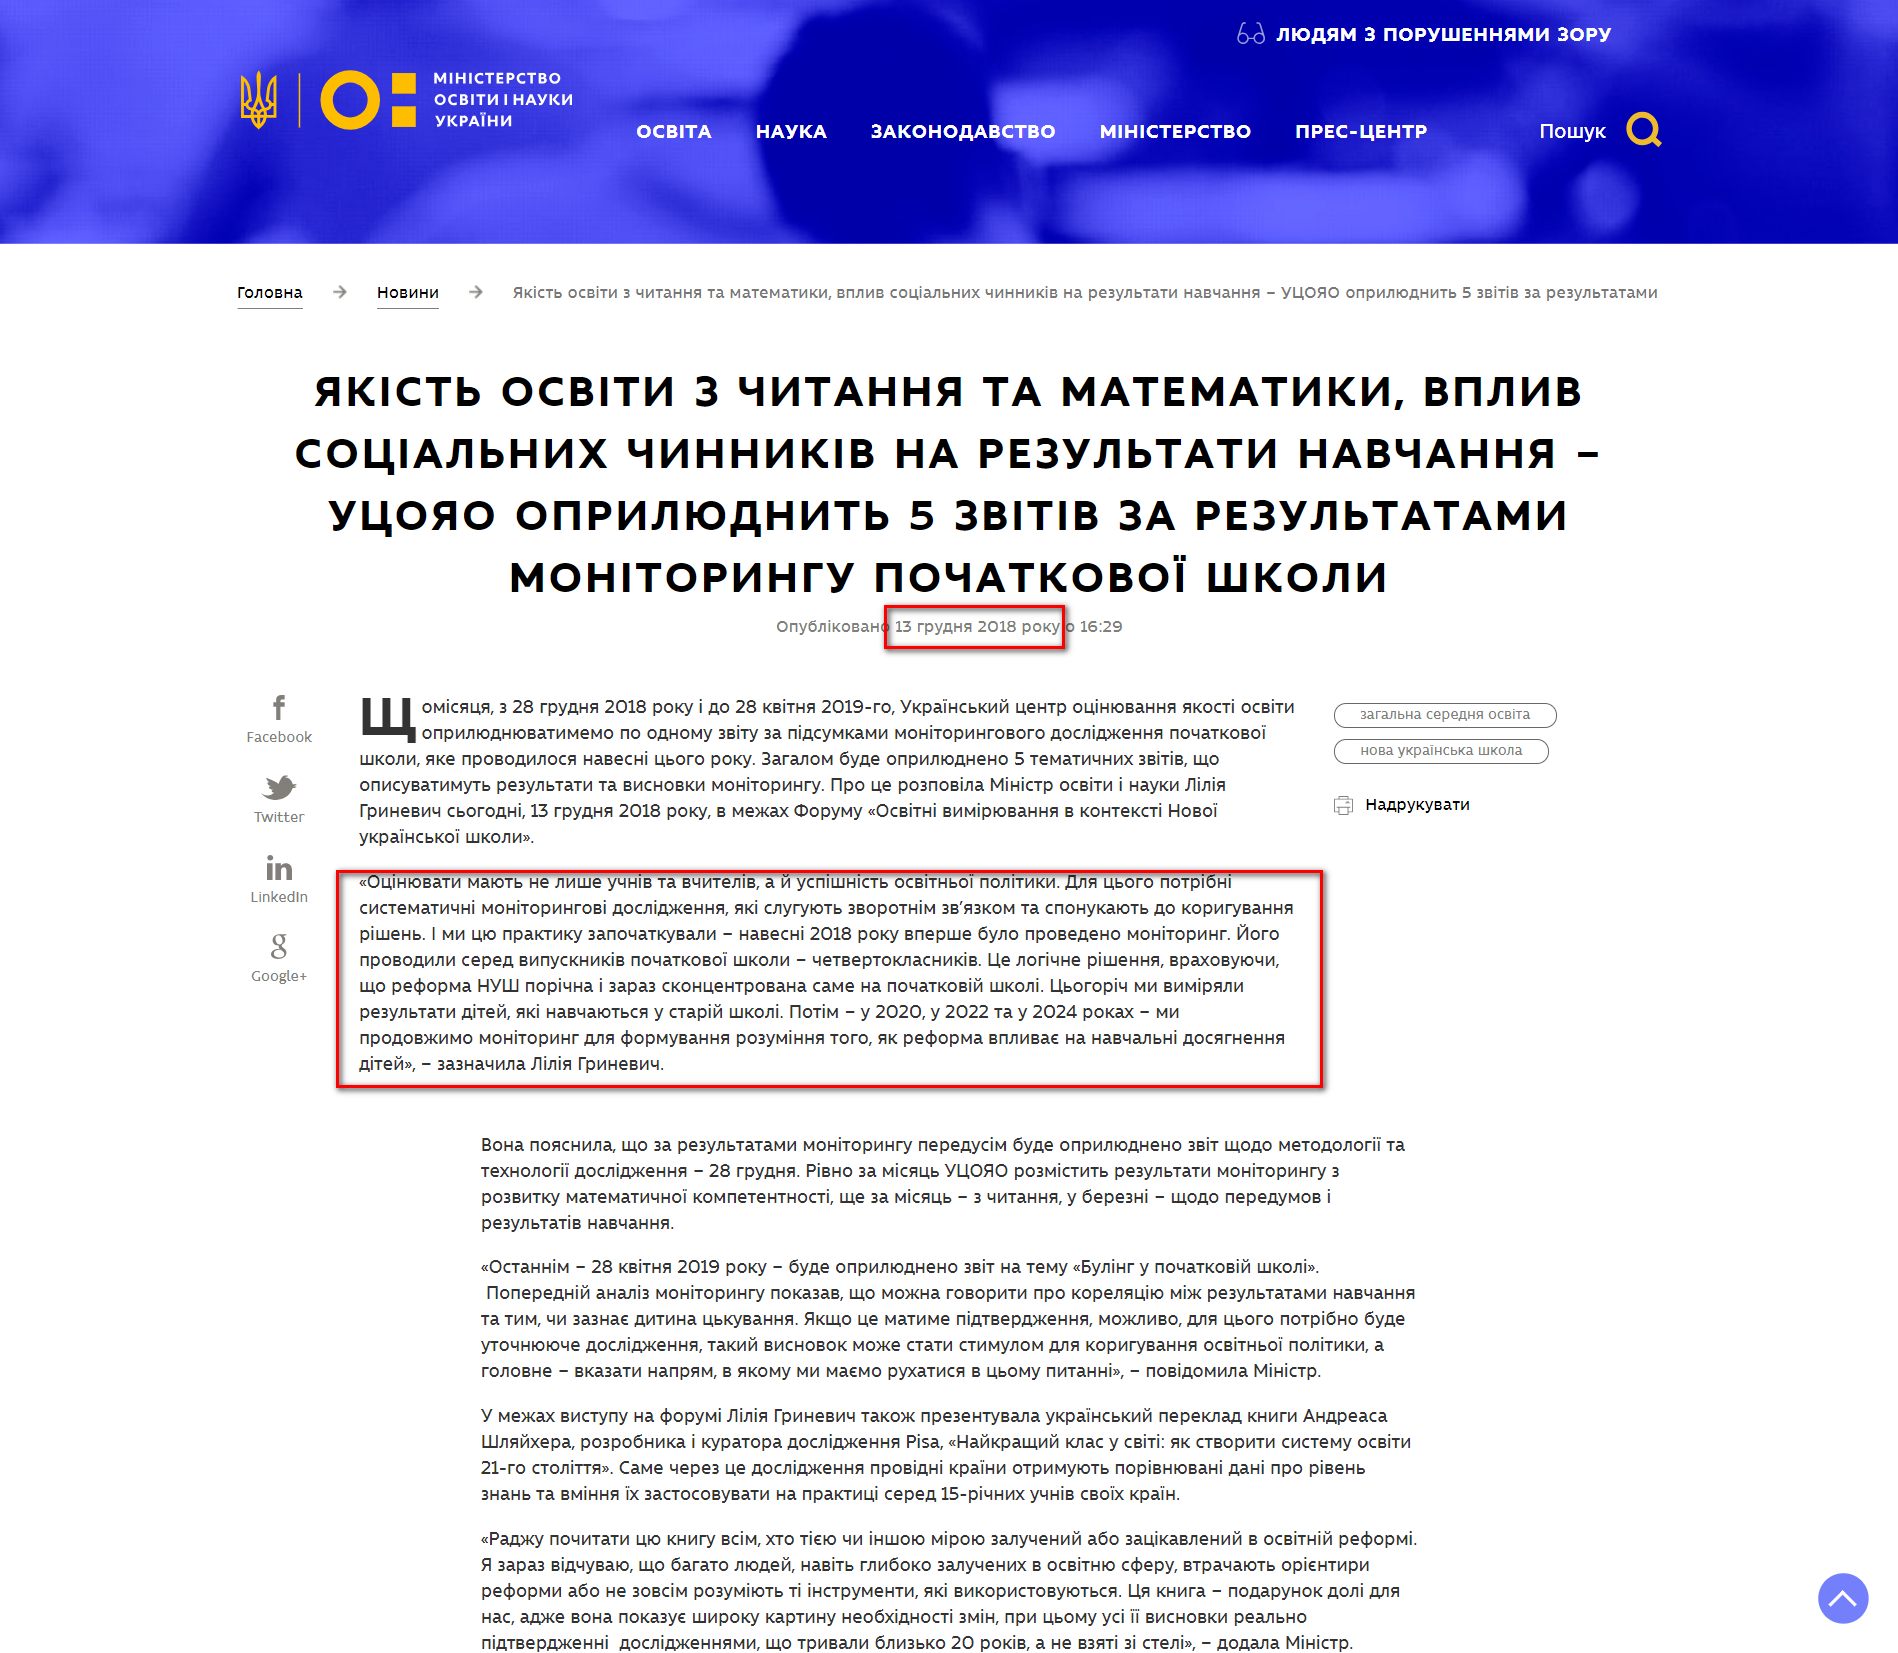 https://mon.gov.ua/ua/news/yakist-osviti-z-chitannya-ta-matematiki-vpliv-socialnih-chinnikiv-na-rezultati-navchannya-ucoyao-oprilyudnit-5-zvitiv-za-rezultatami-monitoringu-pochatkovoyi-shkoli